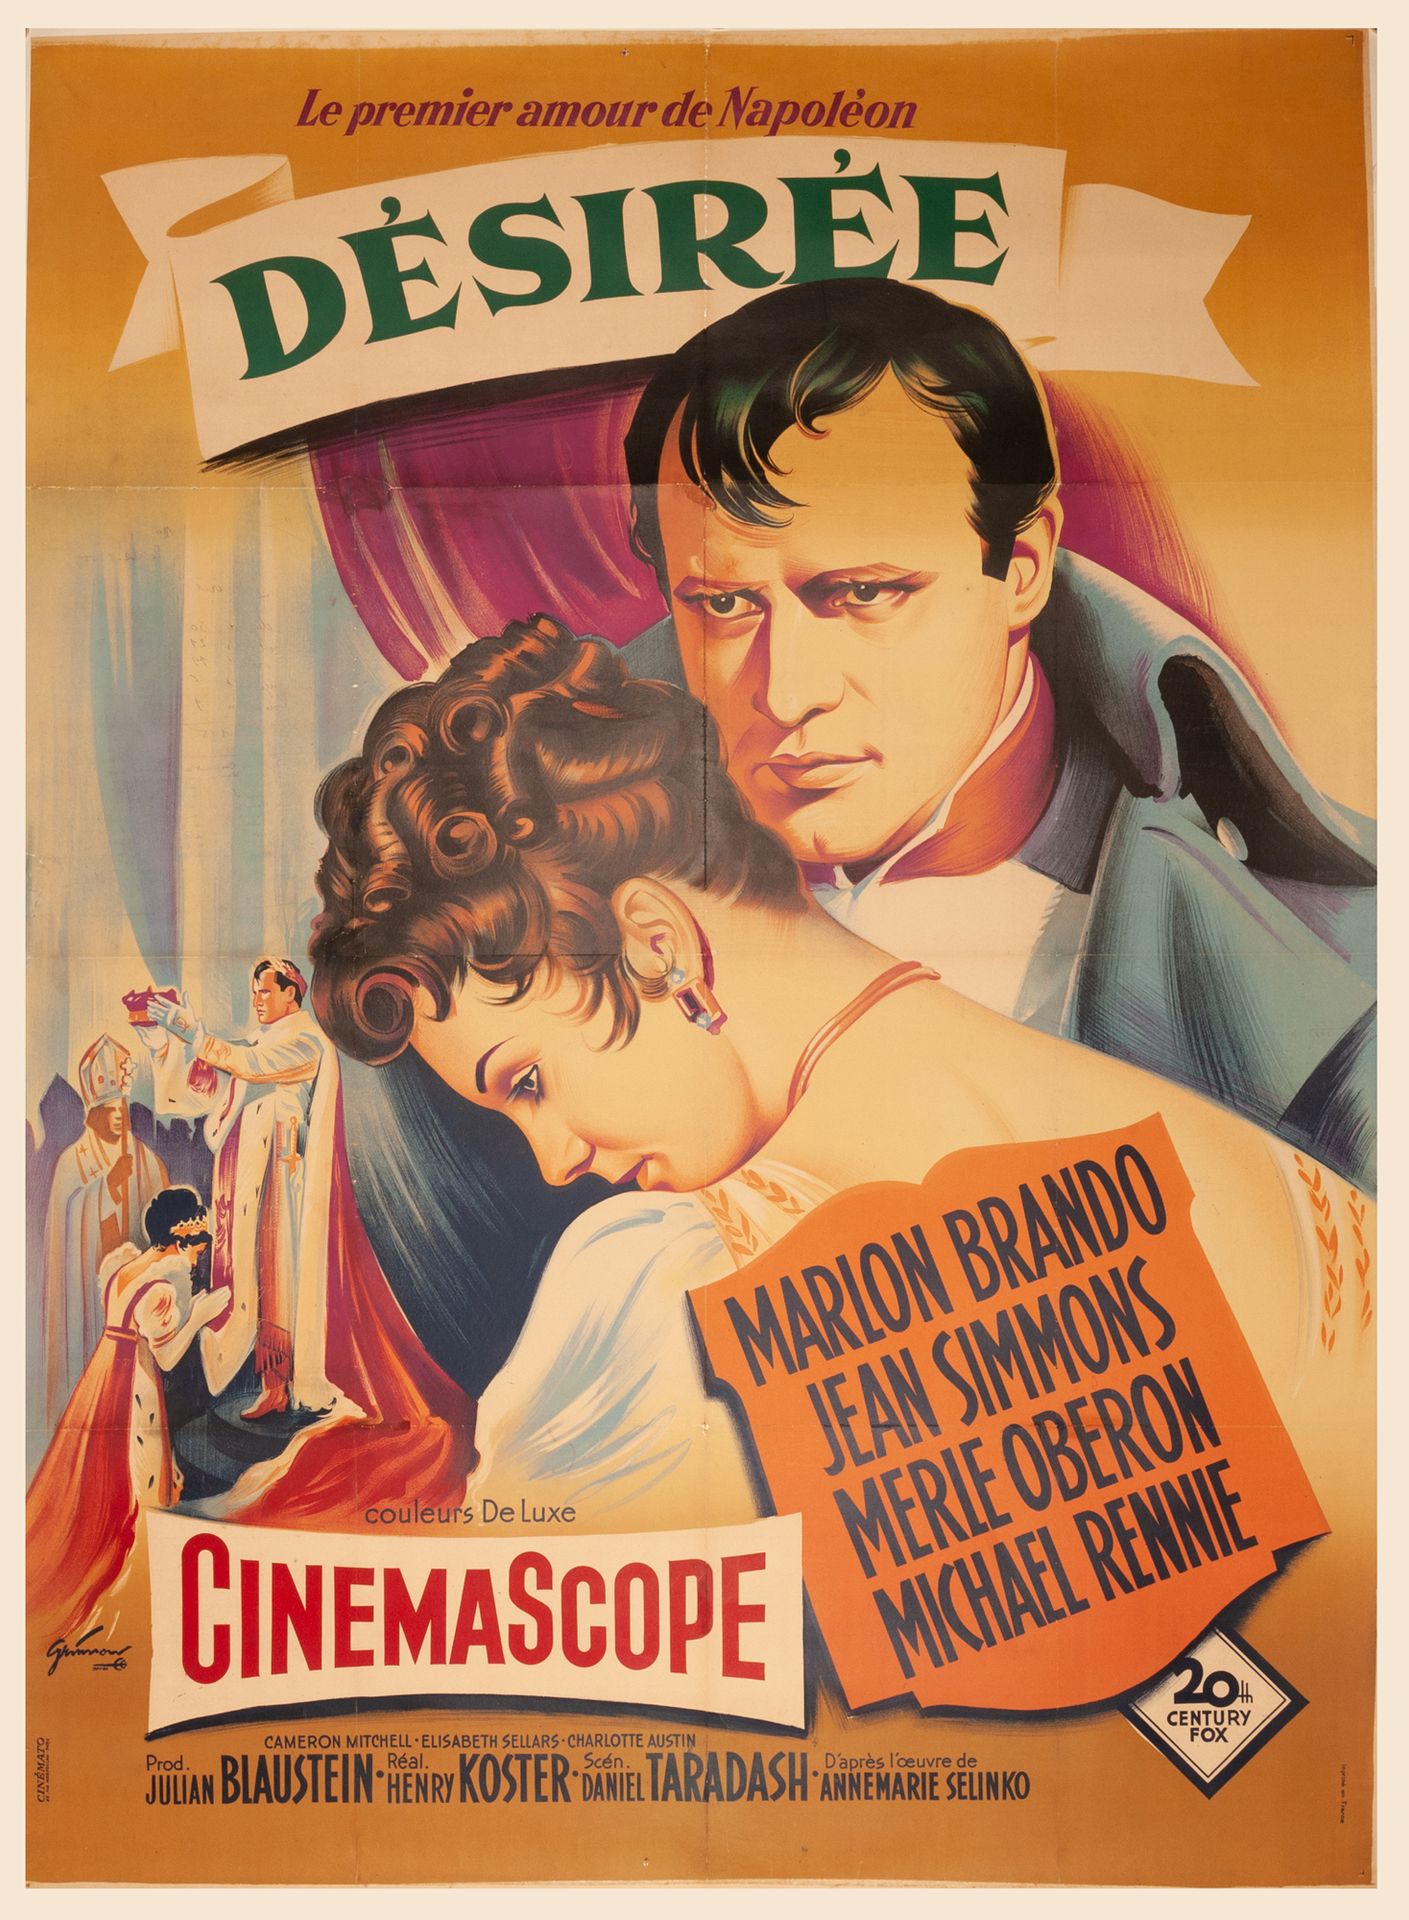 Null 渴望的亨利-科斯特。1954年。
120 x 160厘米。法国海报。Boris Grinsson.印象中，Cinémato.巴黎。
包裹。条件B